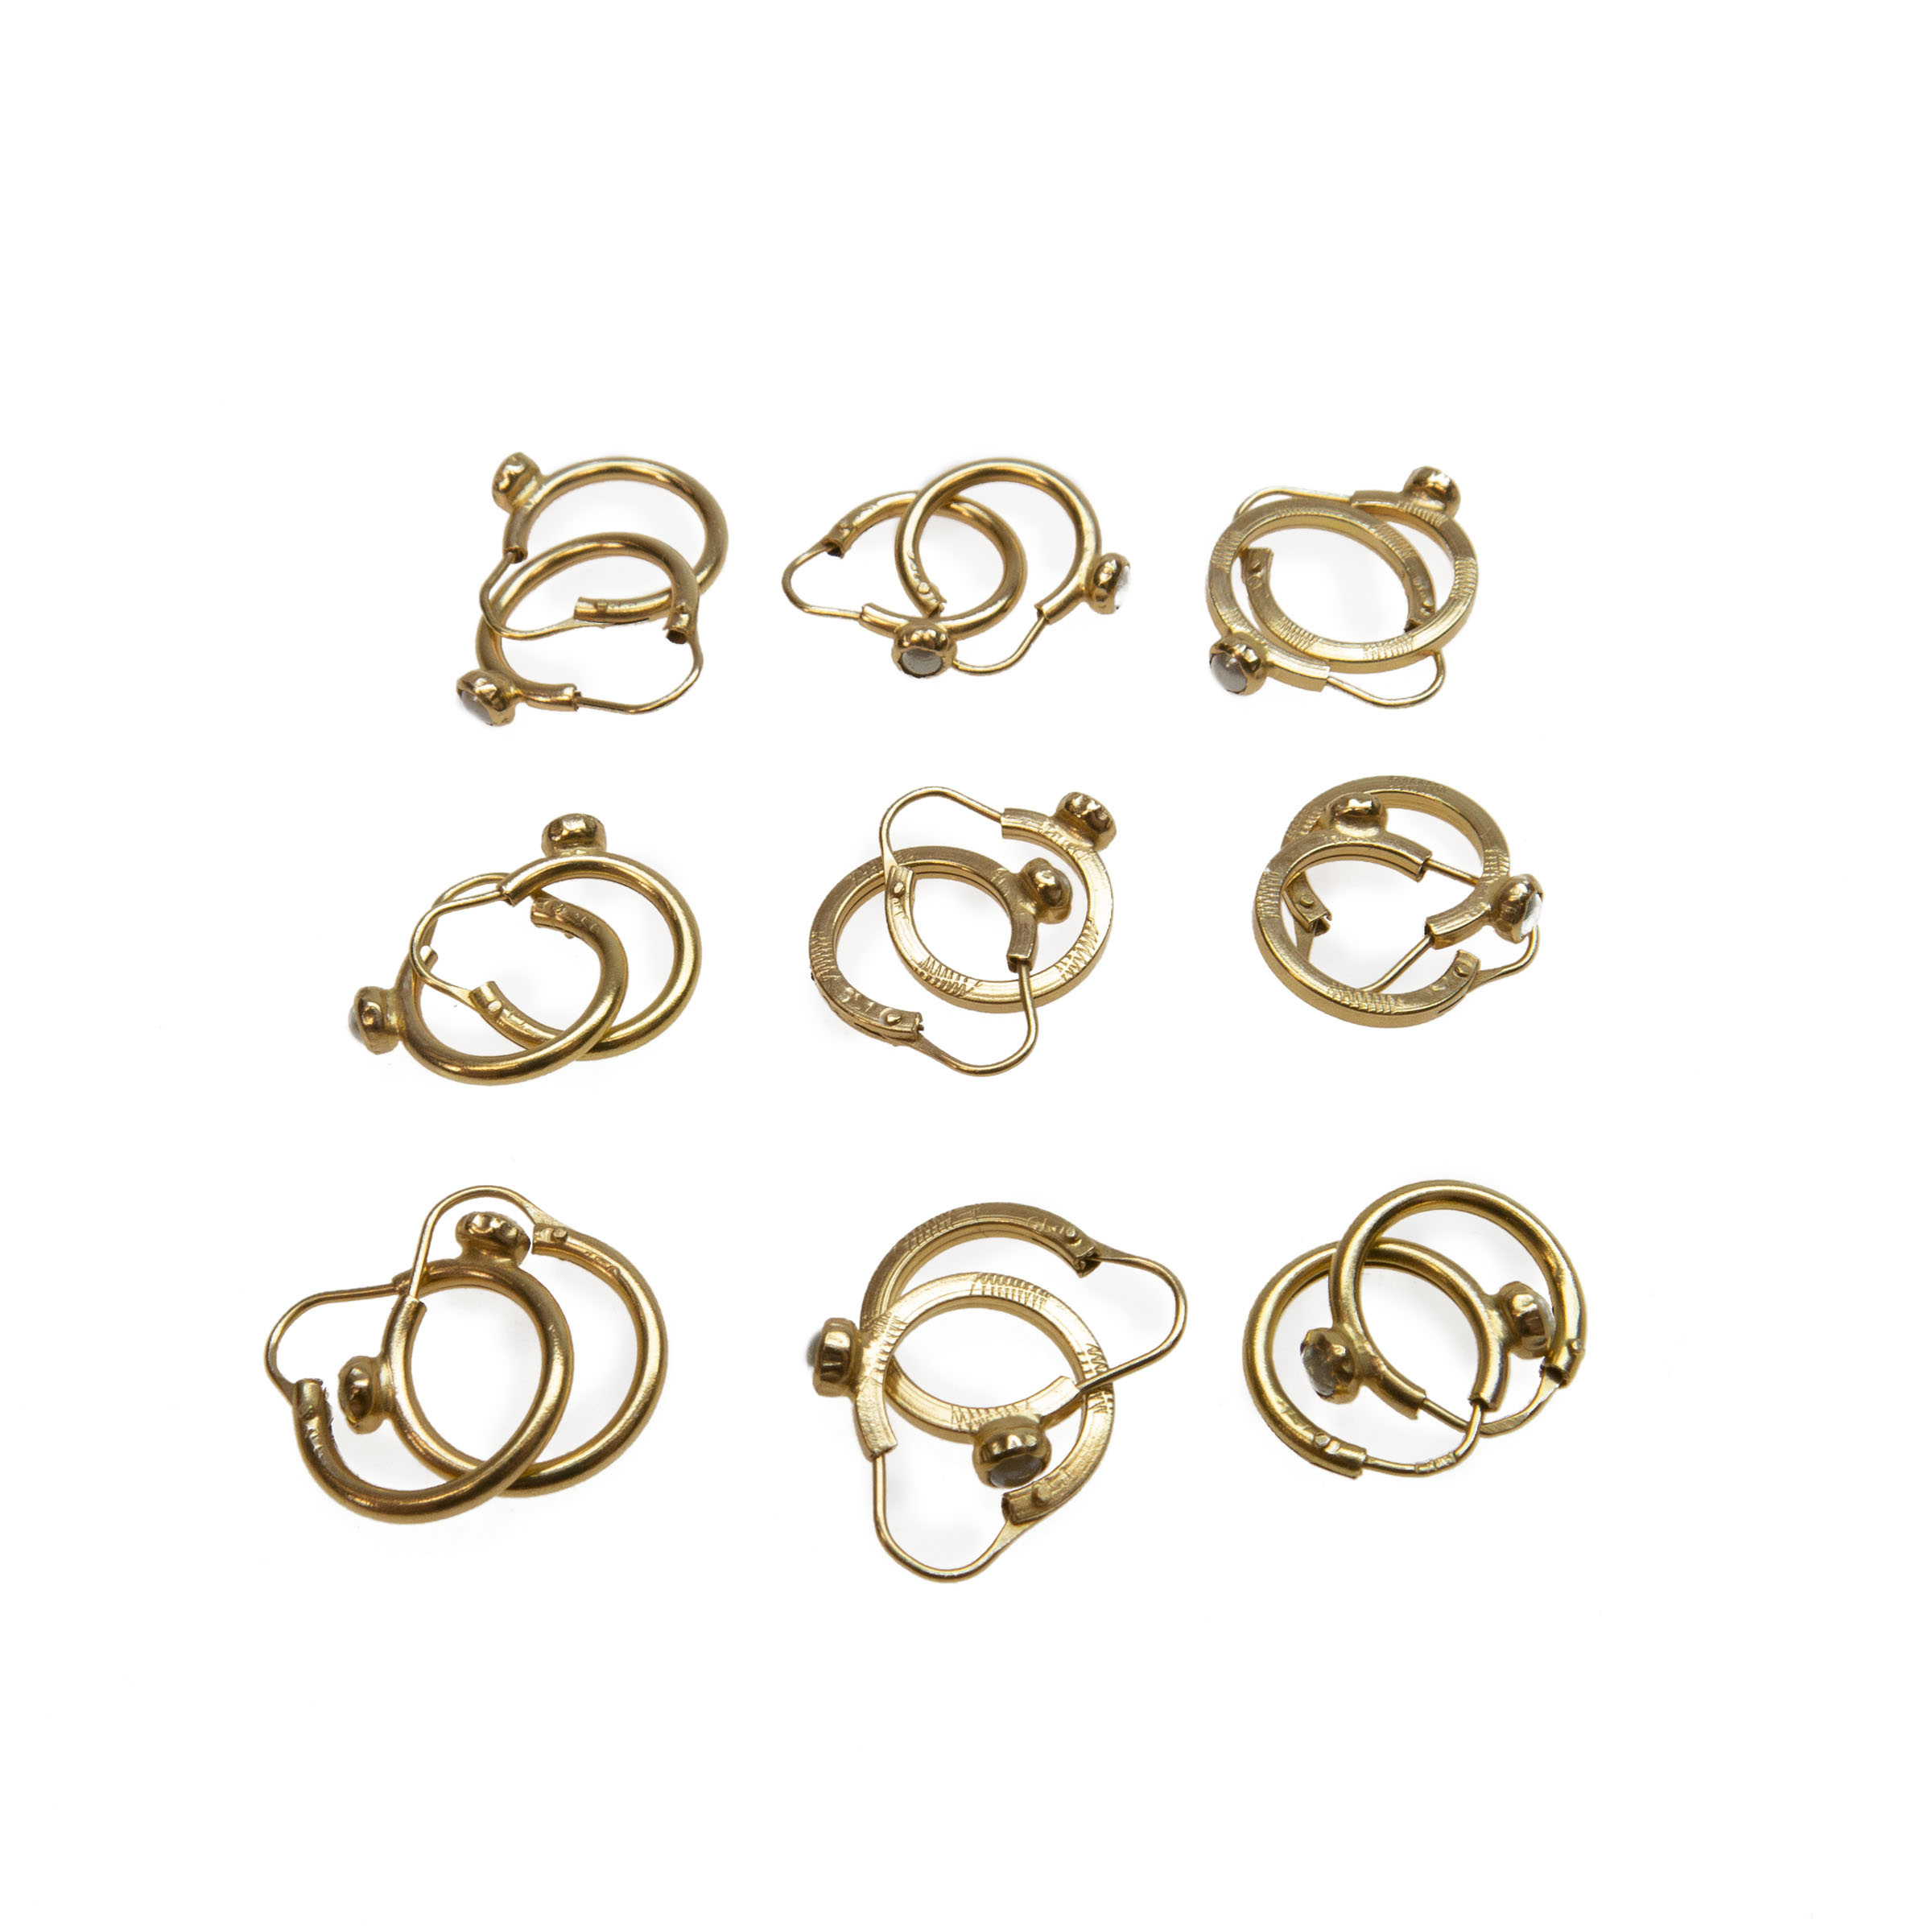 9 X Pairs Of 18K Yellow Gold Hoop Earrings